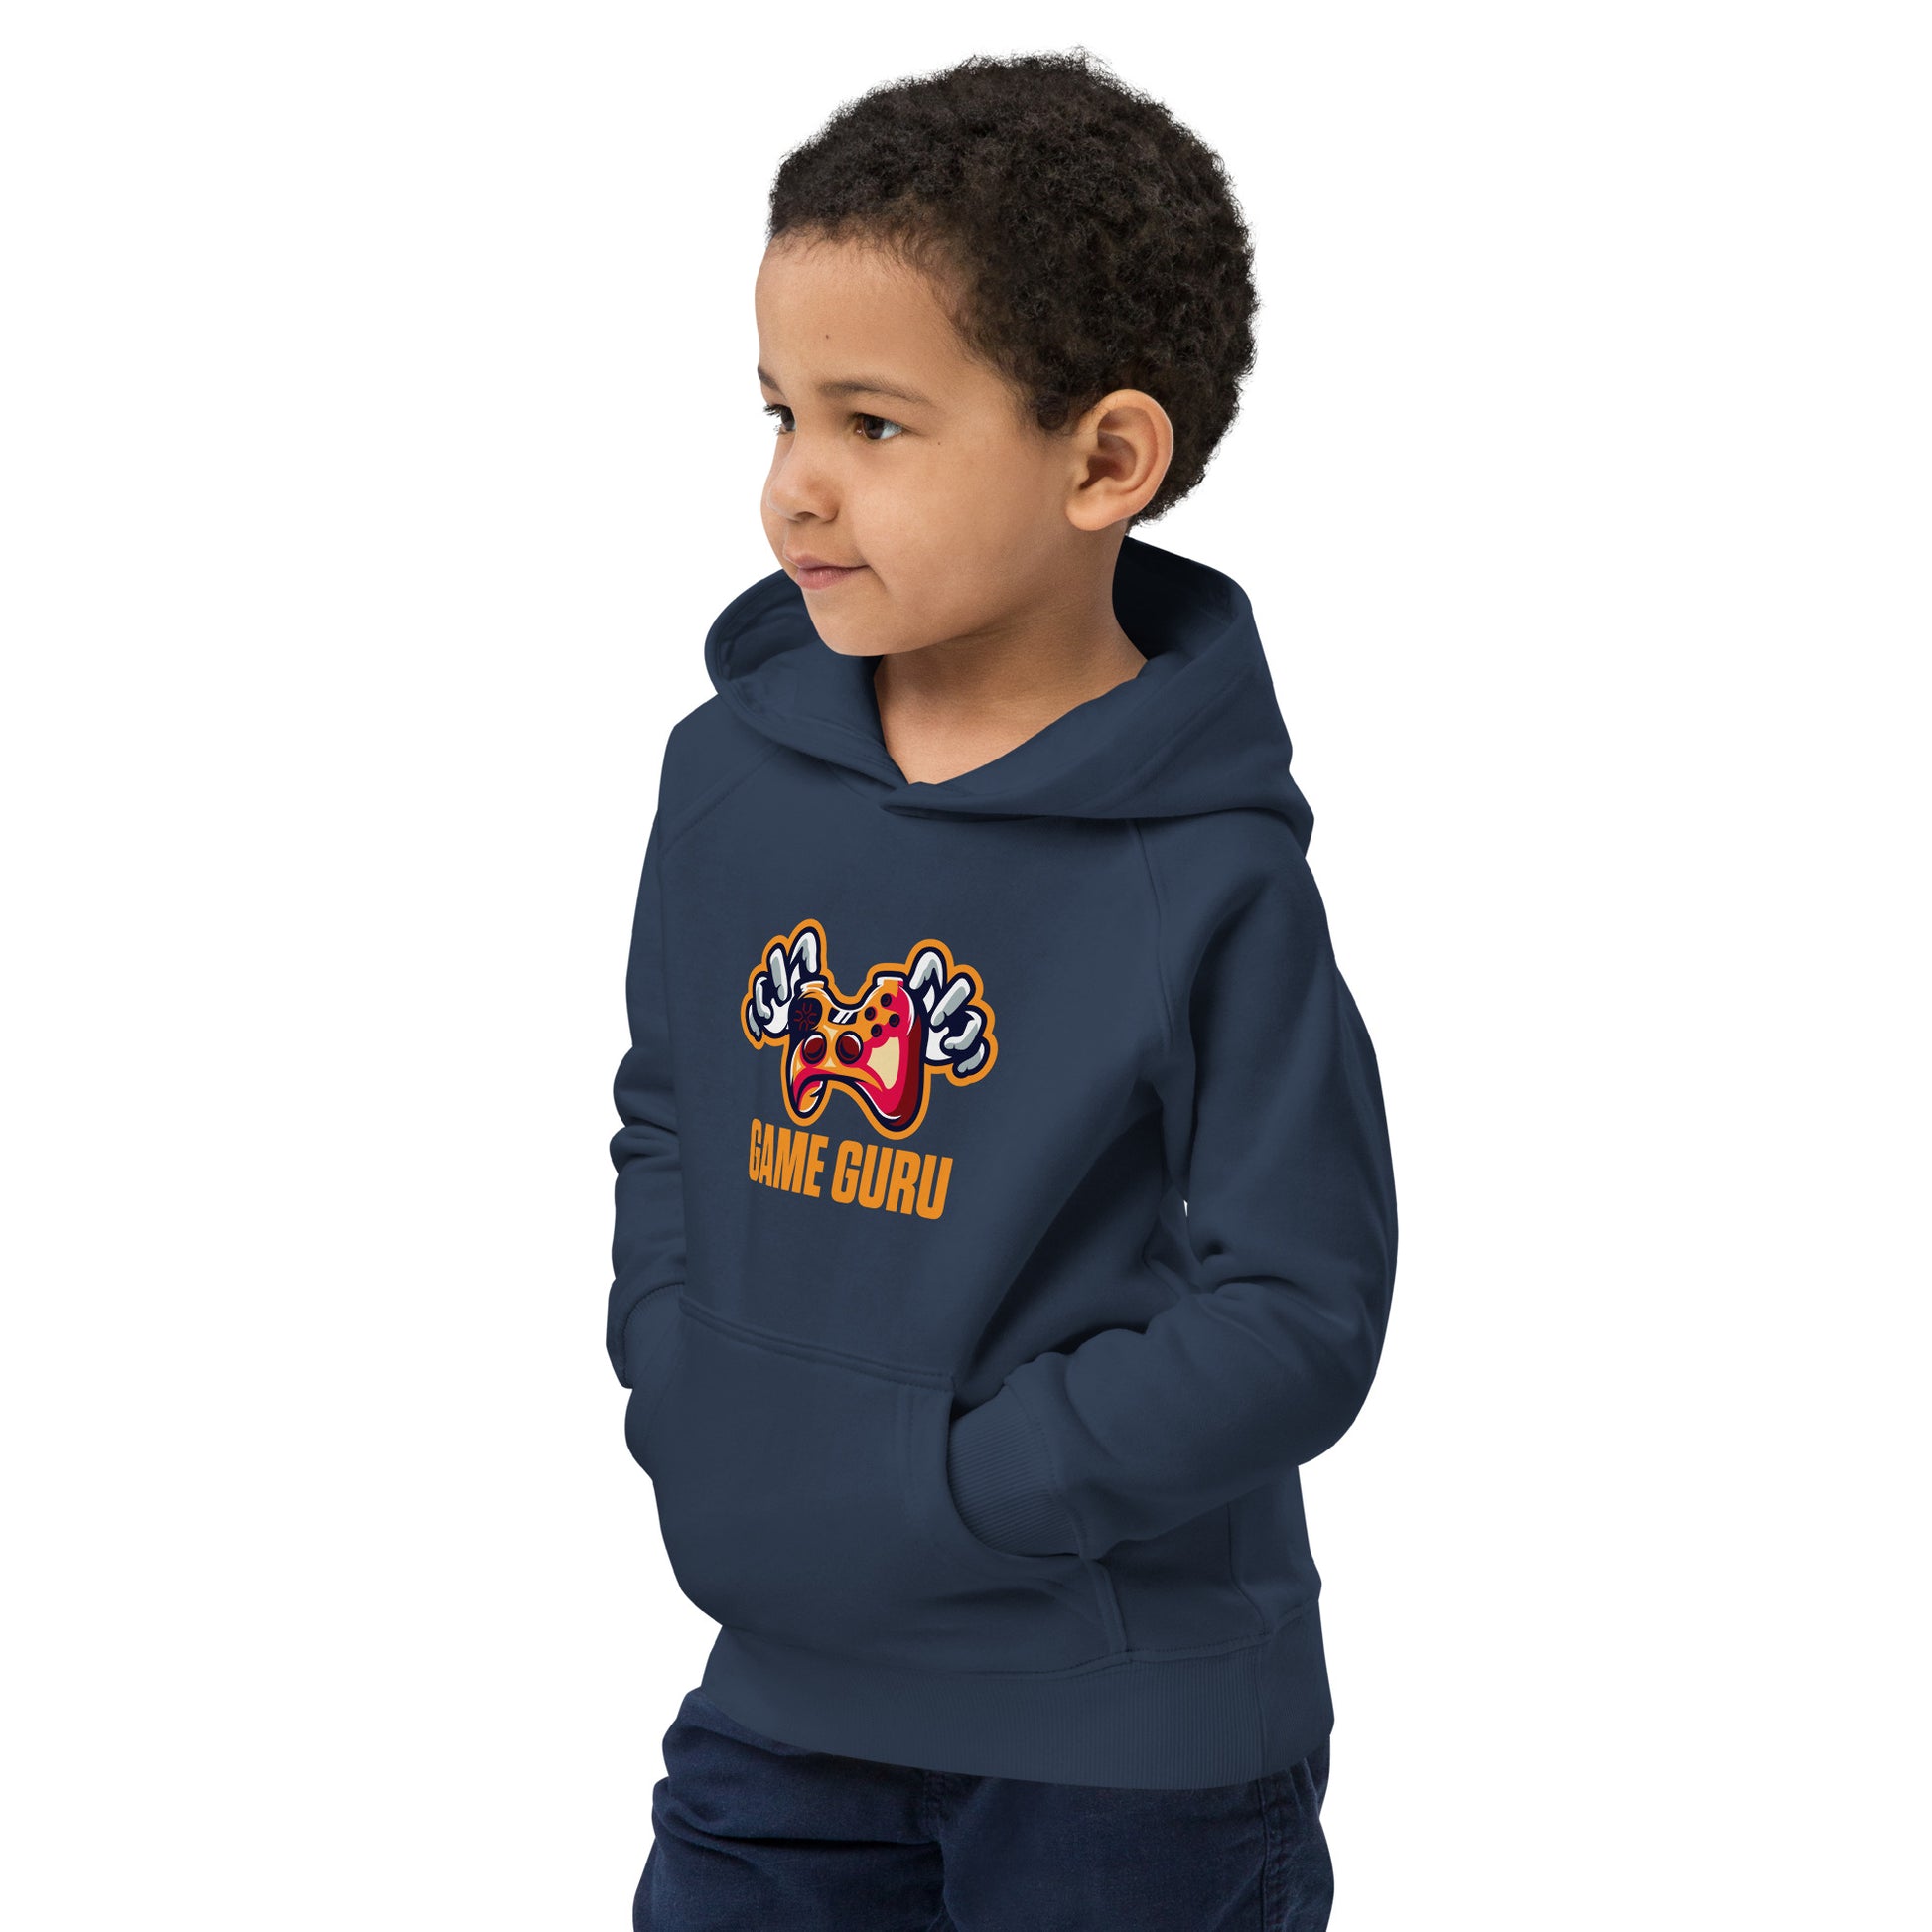 Game Guru - Kids eco hoodie - HobbyMeFree